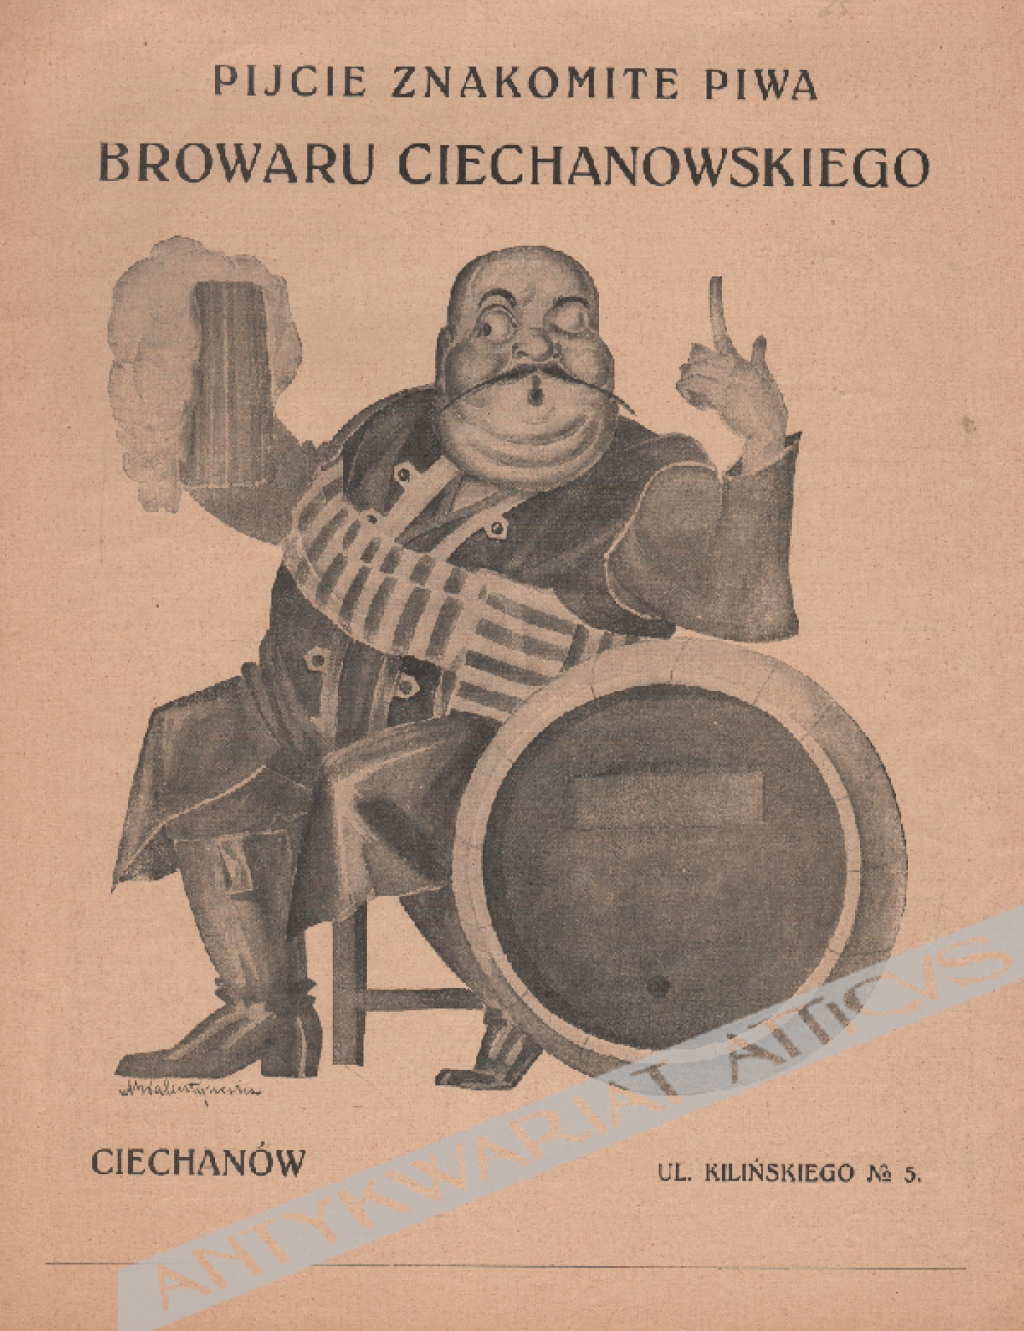 [reklama, 1929] Pijcie znakomite piwa Browaru Ciechanowskiego